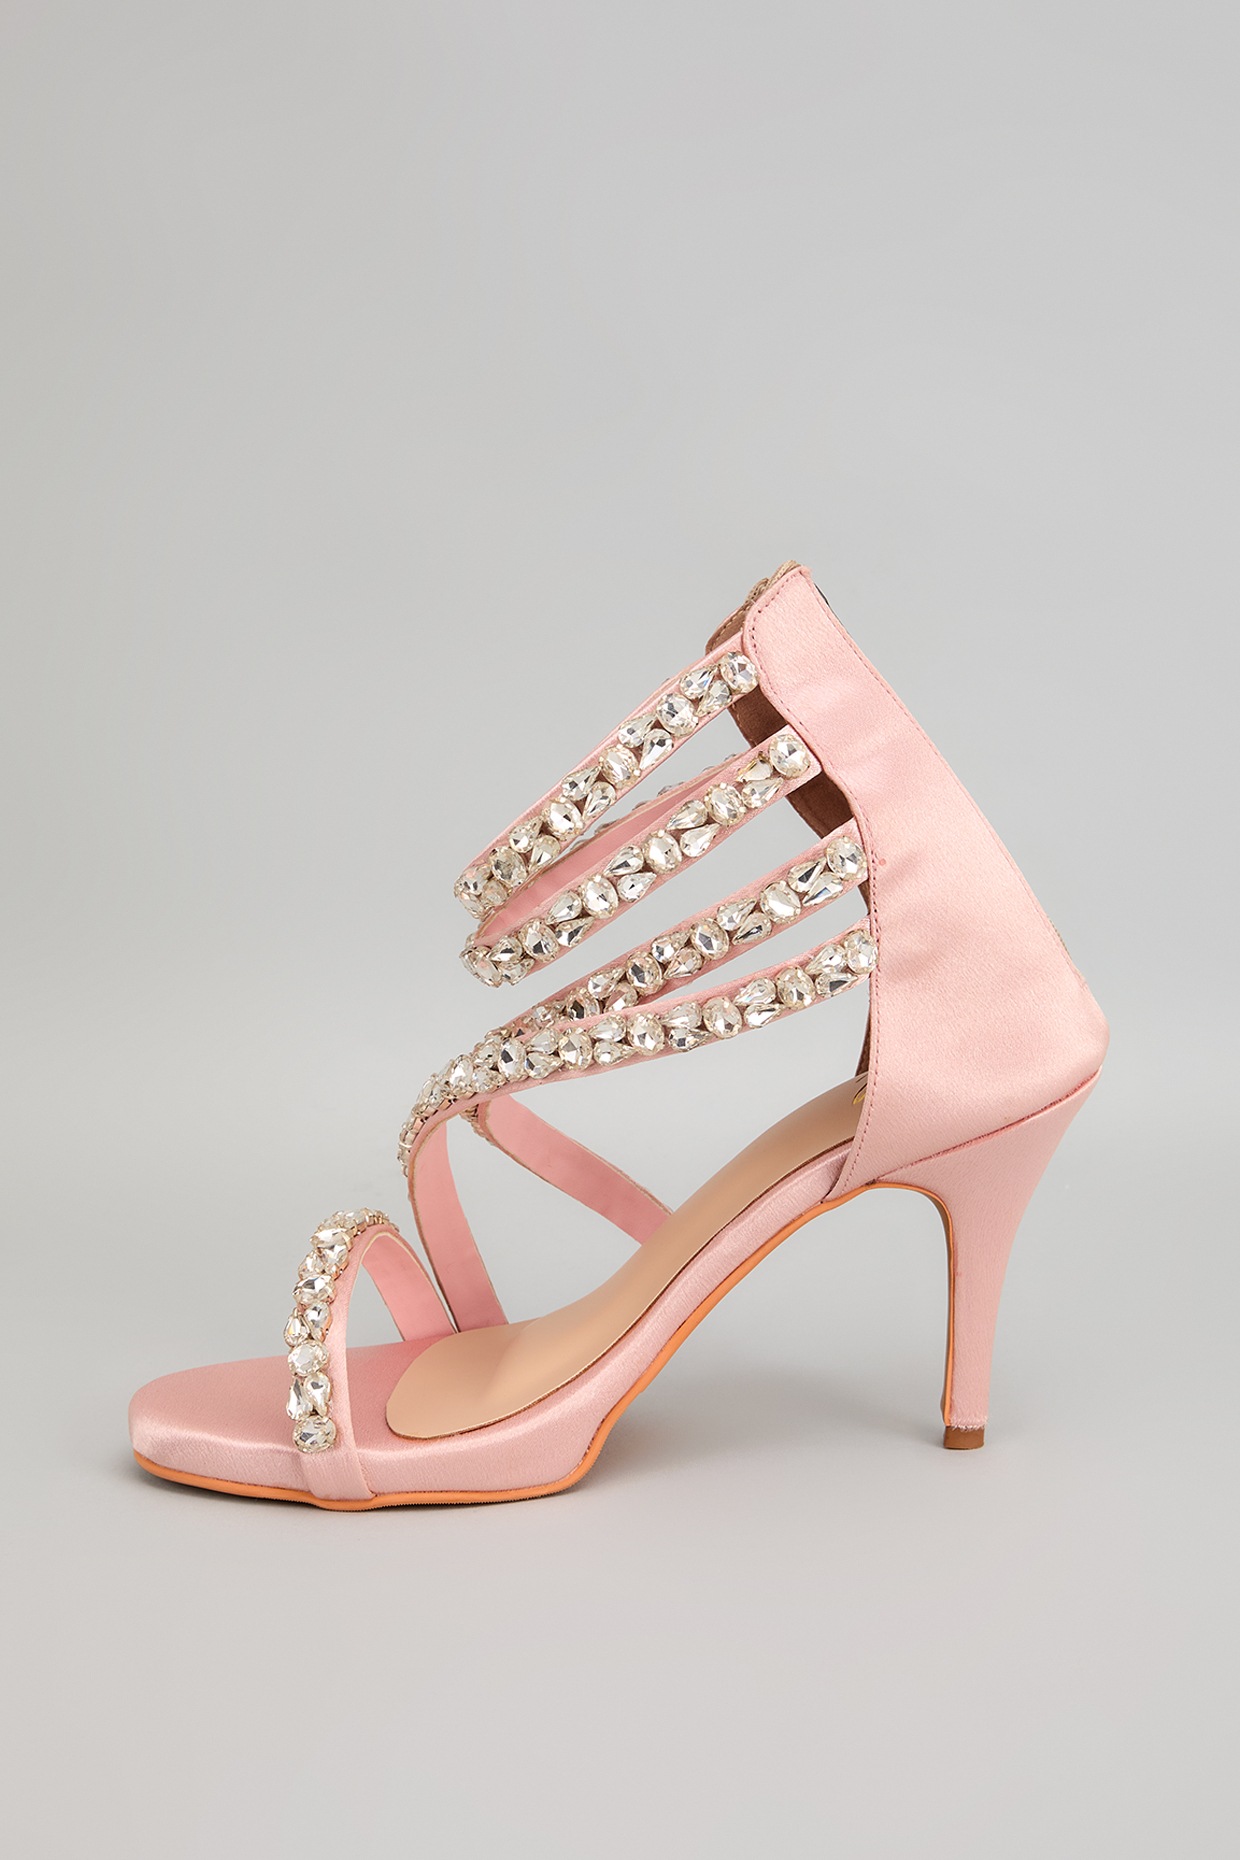 EUNICE Pink Satin Heels | Pink Satin Sandals for Women - VHNY Heels